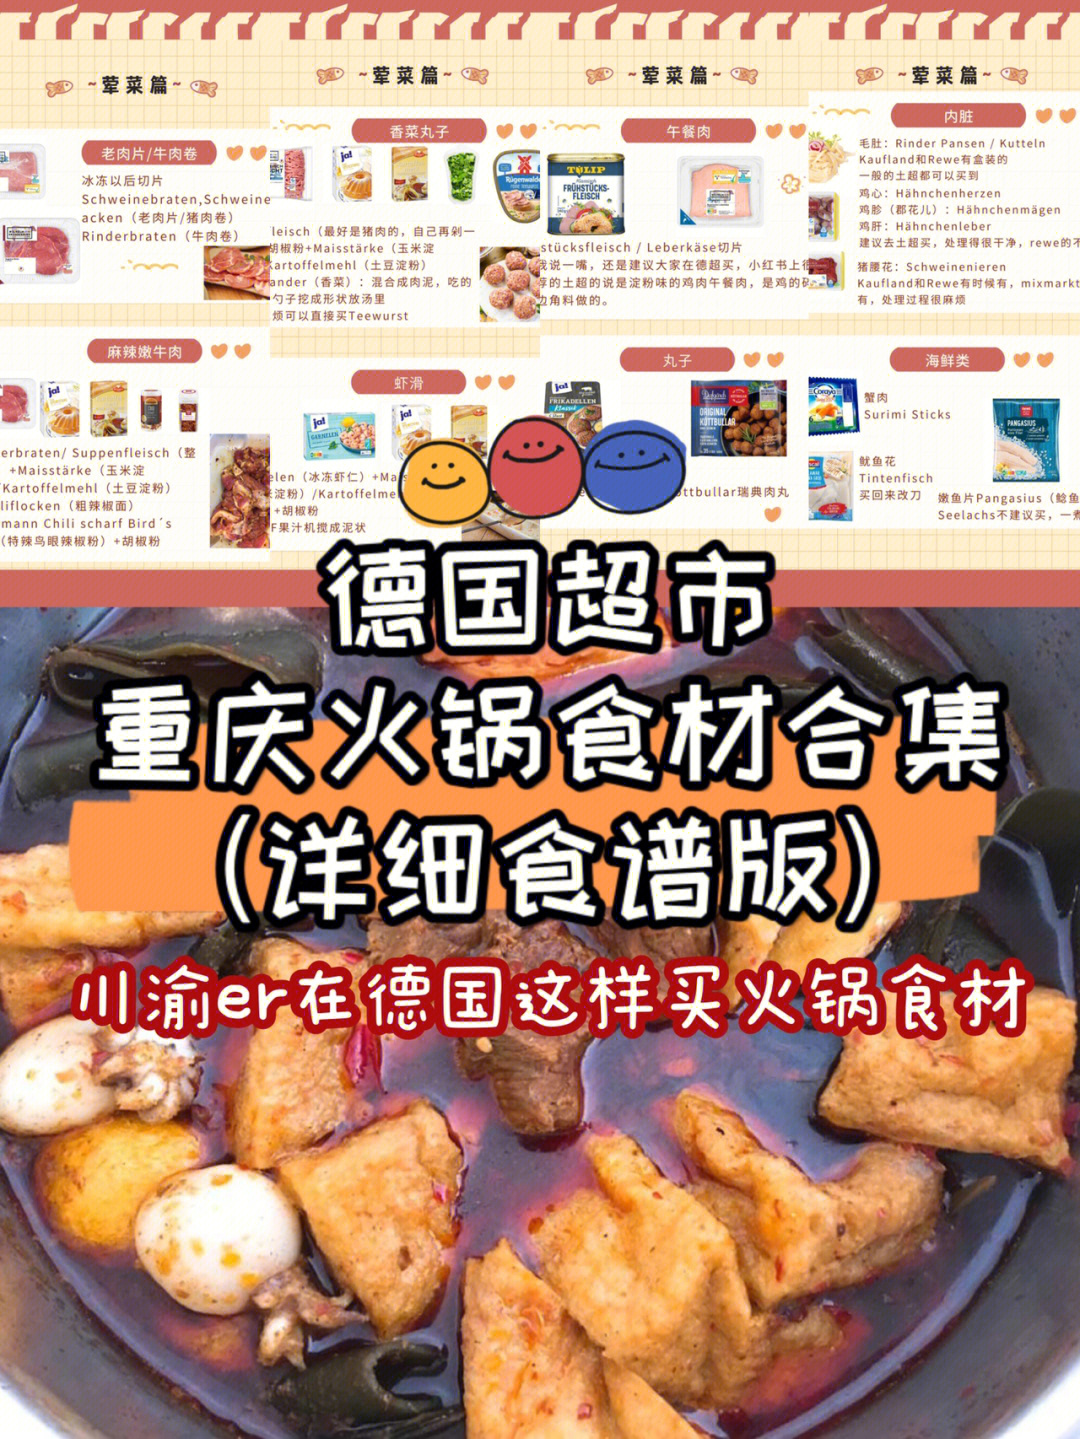 火锅丸子种类菜单图片